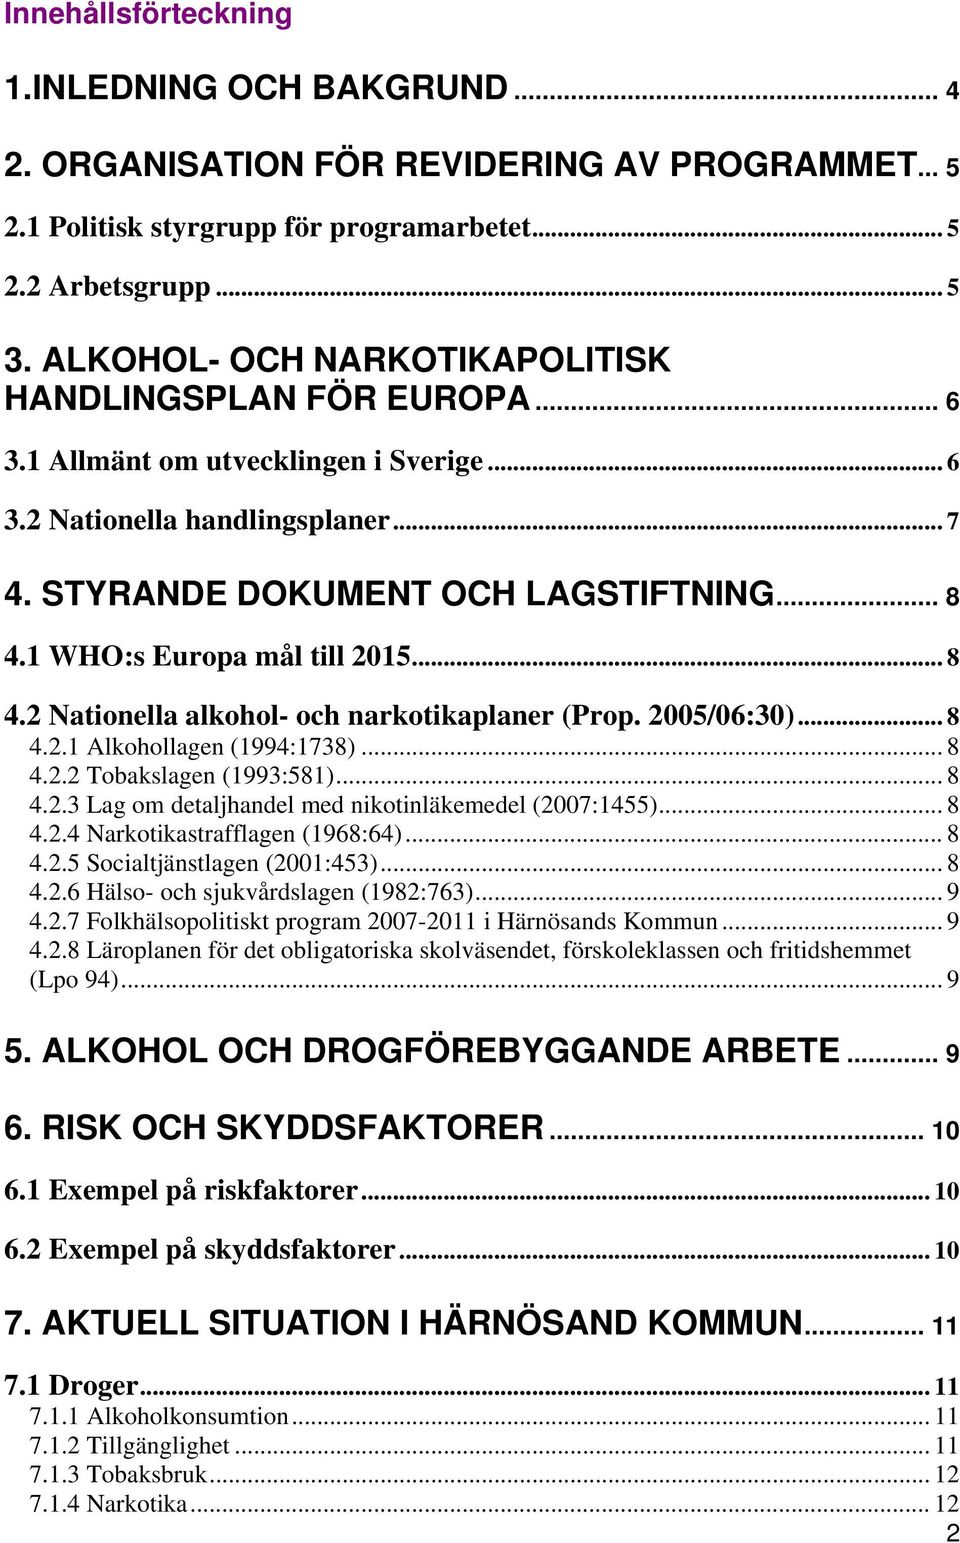 1 WHO:s Europa mål till 2015... 8 4.2 Nationella alkohol- och narkotikaplaner (Prop. 2005/06:30)... 8 4.2.1 Alkohollagen (1994:1738)... 8 4.2.2 Tobakslagen (1993:581)... 8 4.2.3 Lag om detaljhandel med nikotinläkemedel (2007:1455).